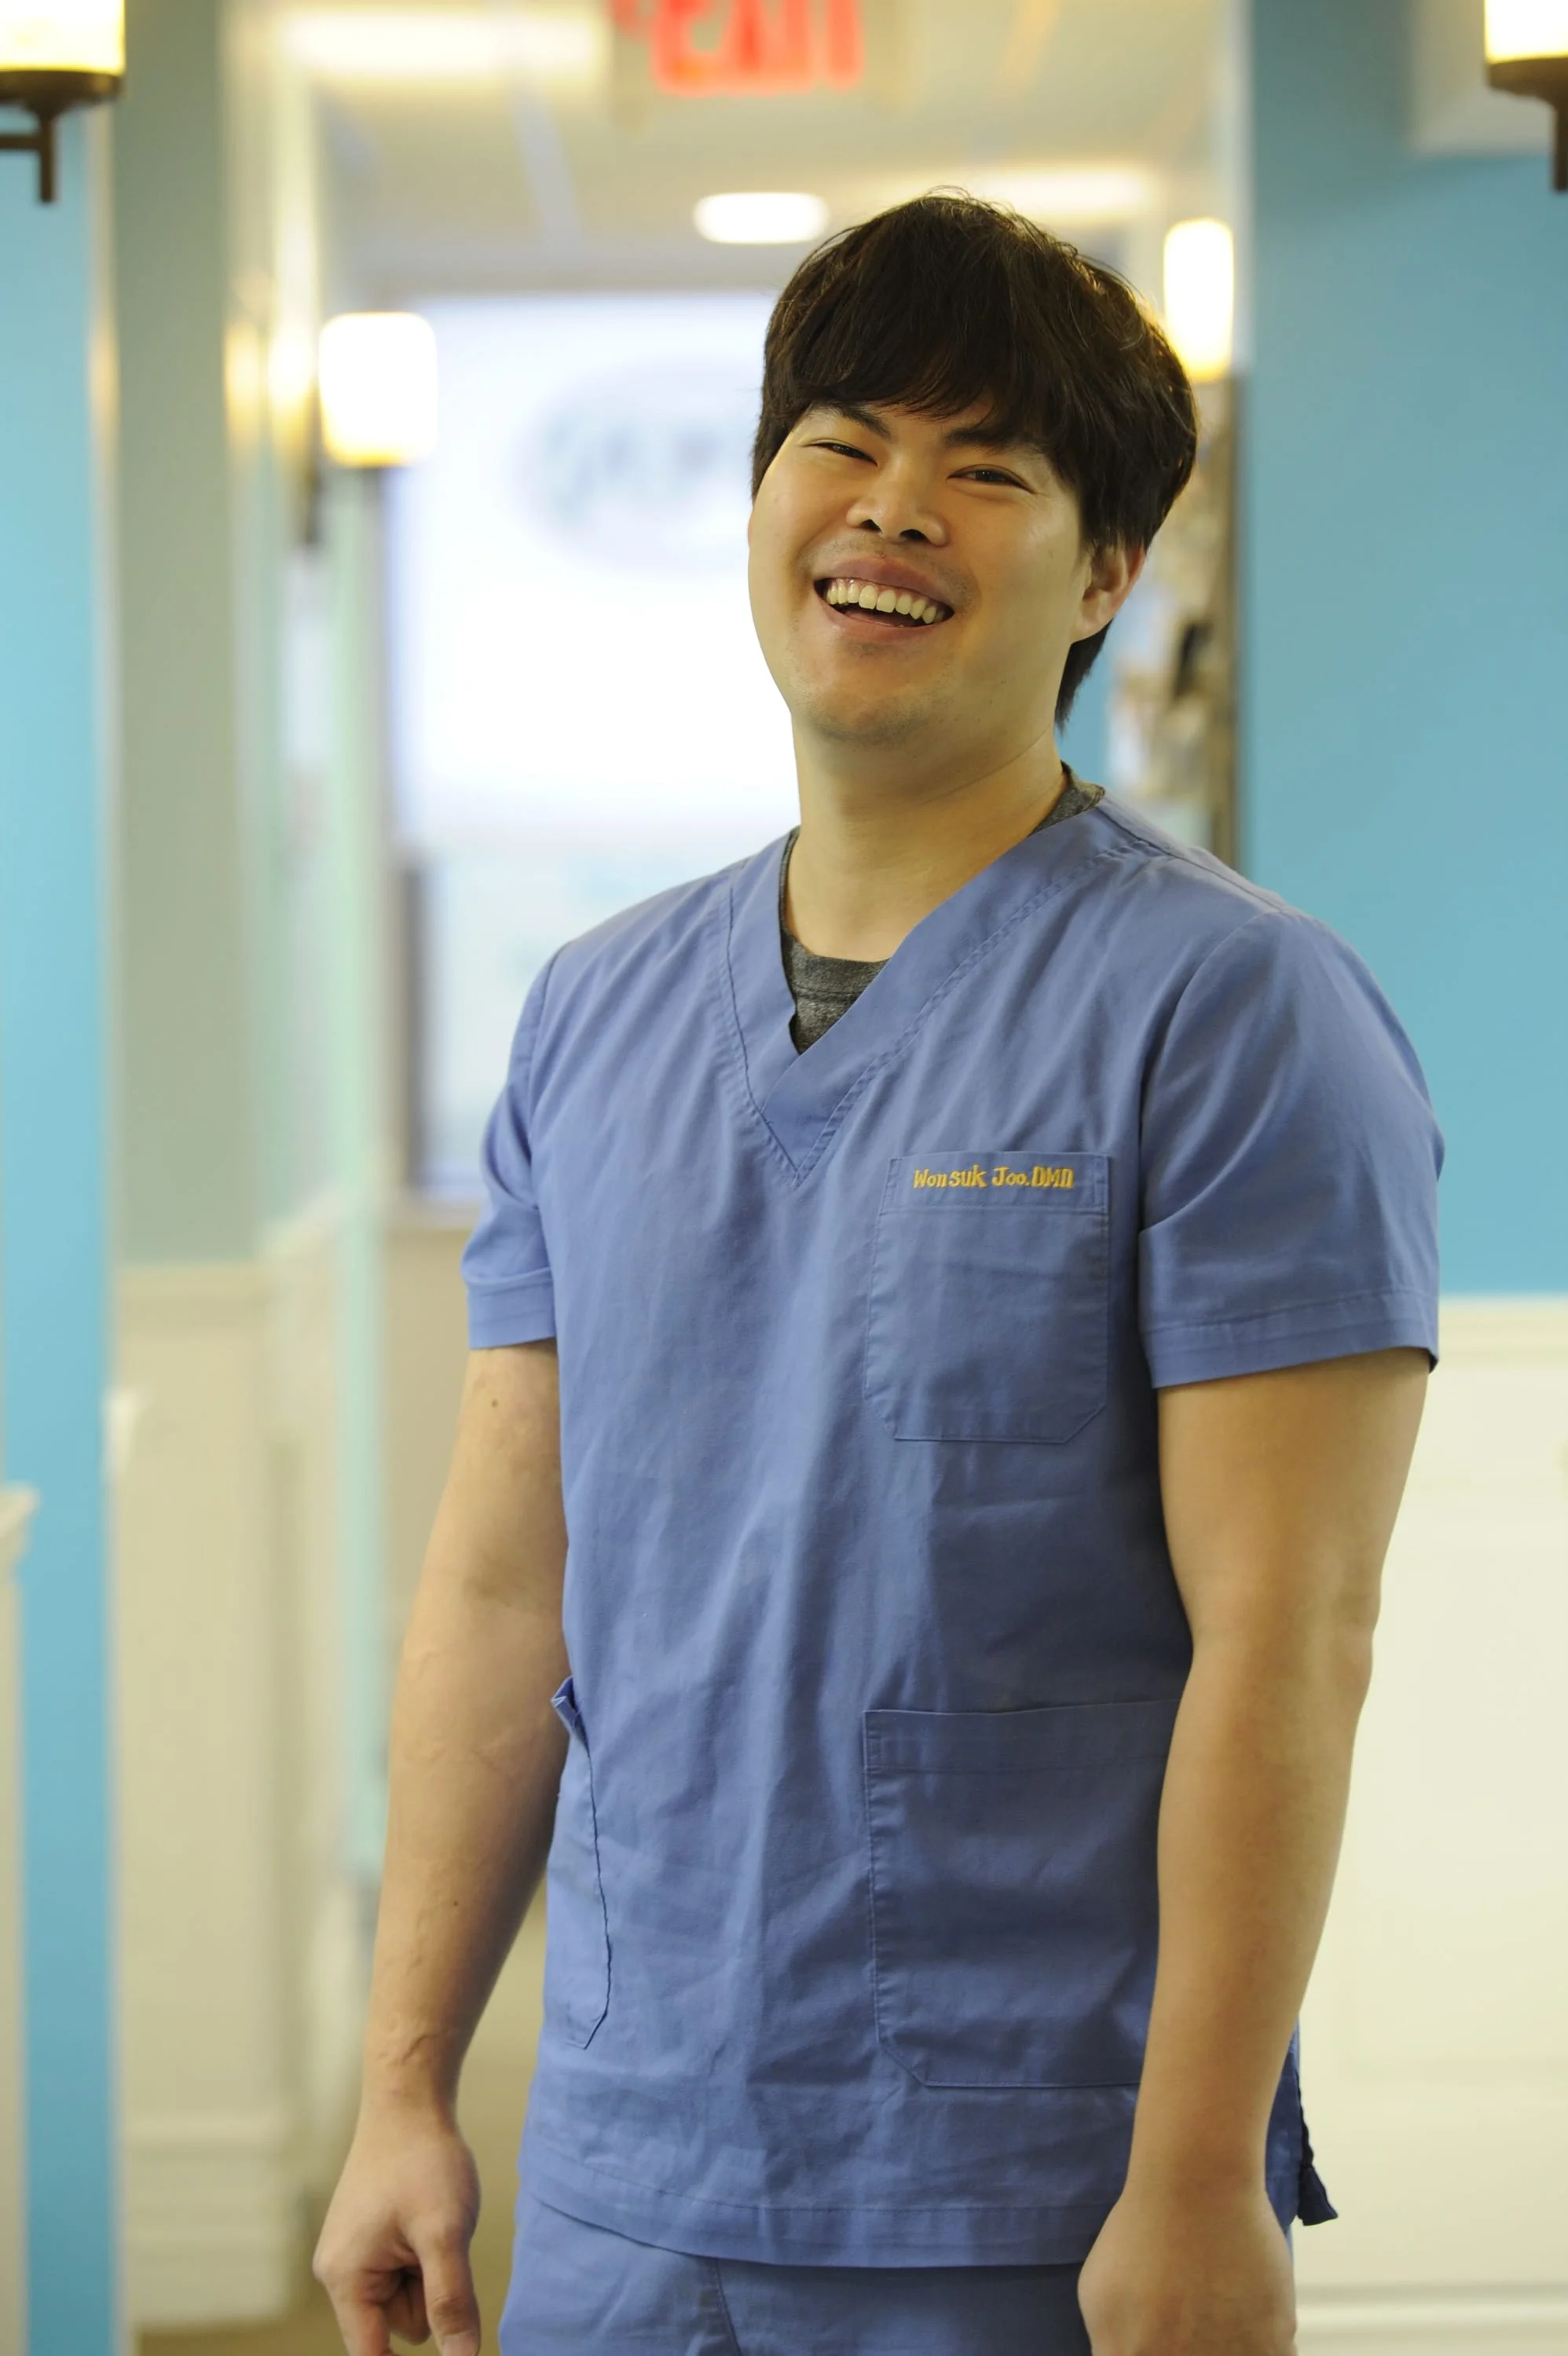 Dr Joo